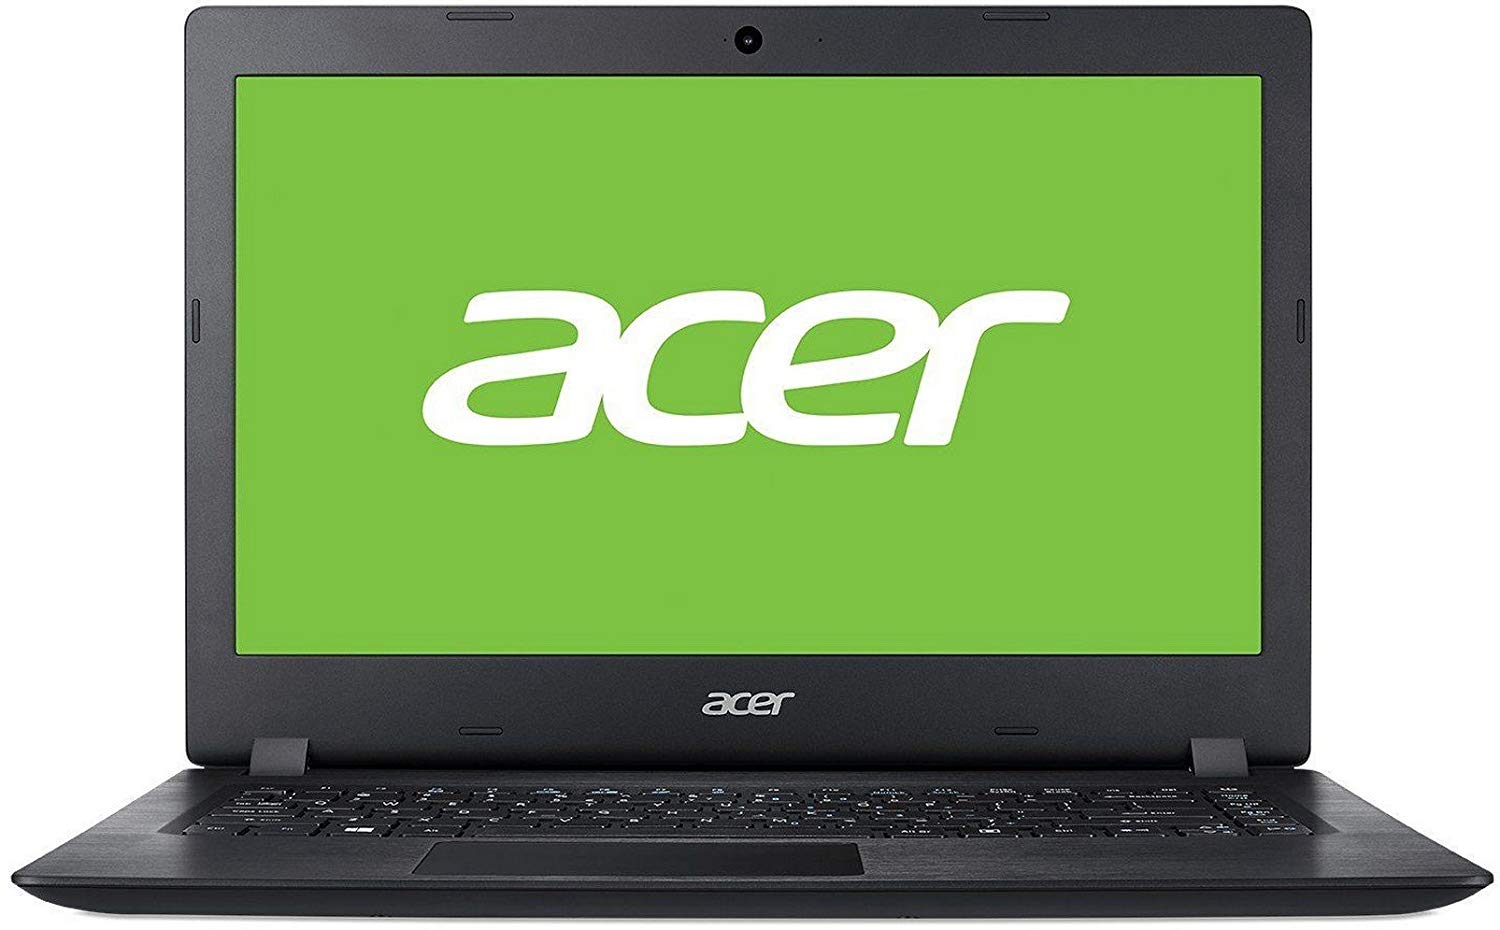 Acer Aspire A315-21 AMD A4 15.6-inch Laptop (A4-9120 4GB/1TB HDD/Elinux/Black/2.10kg)